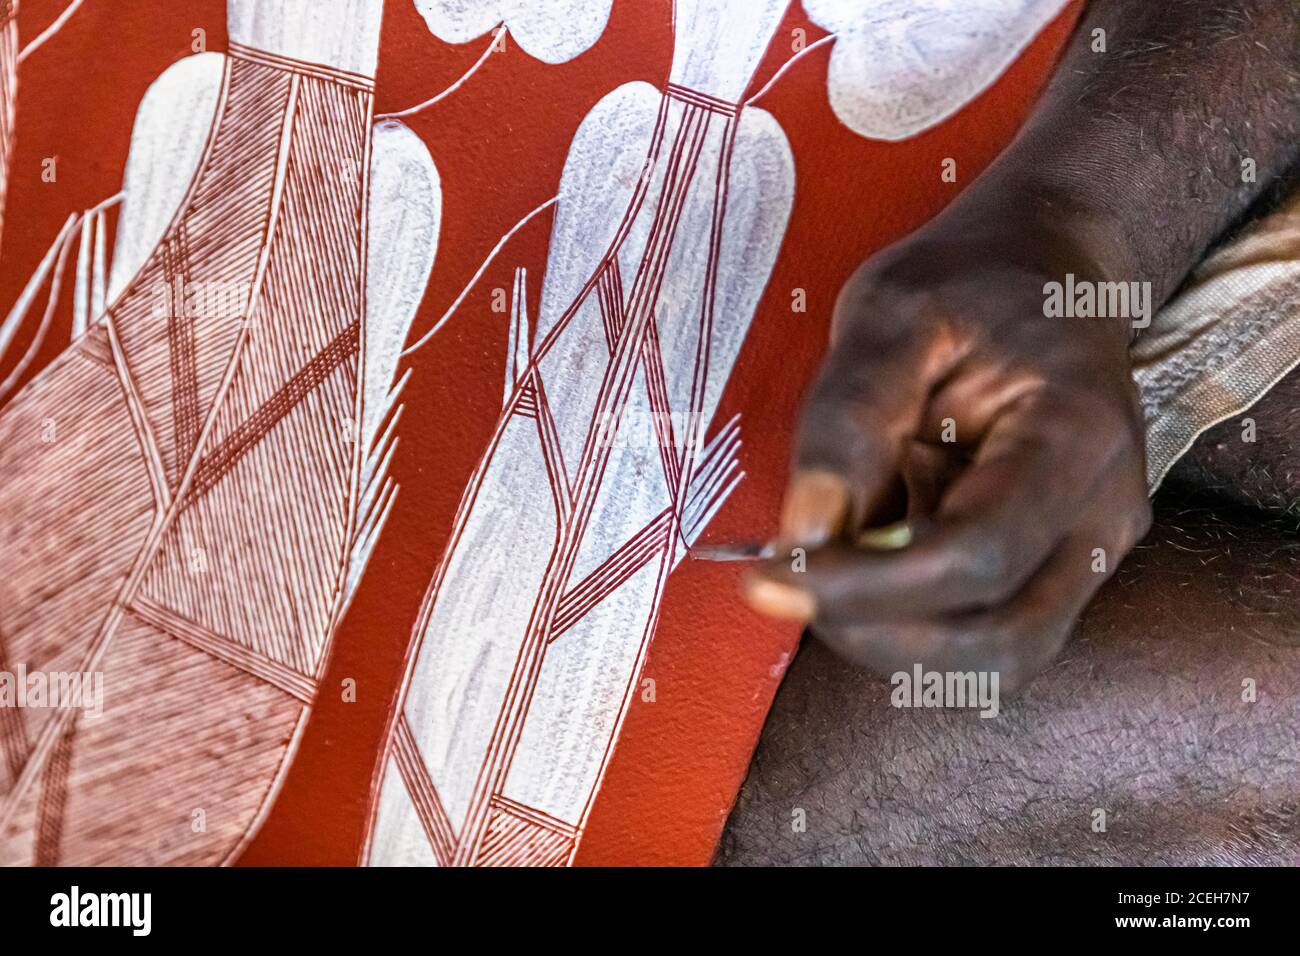 Les artistes aborigènes de Gunbalanya sont inspirés par les peintures rupestres classiques pour leurs photos. La brosse fine est faite des fibres d'une paume à vis Banque D'Images